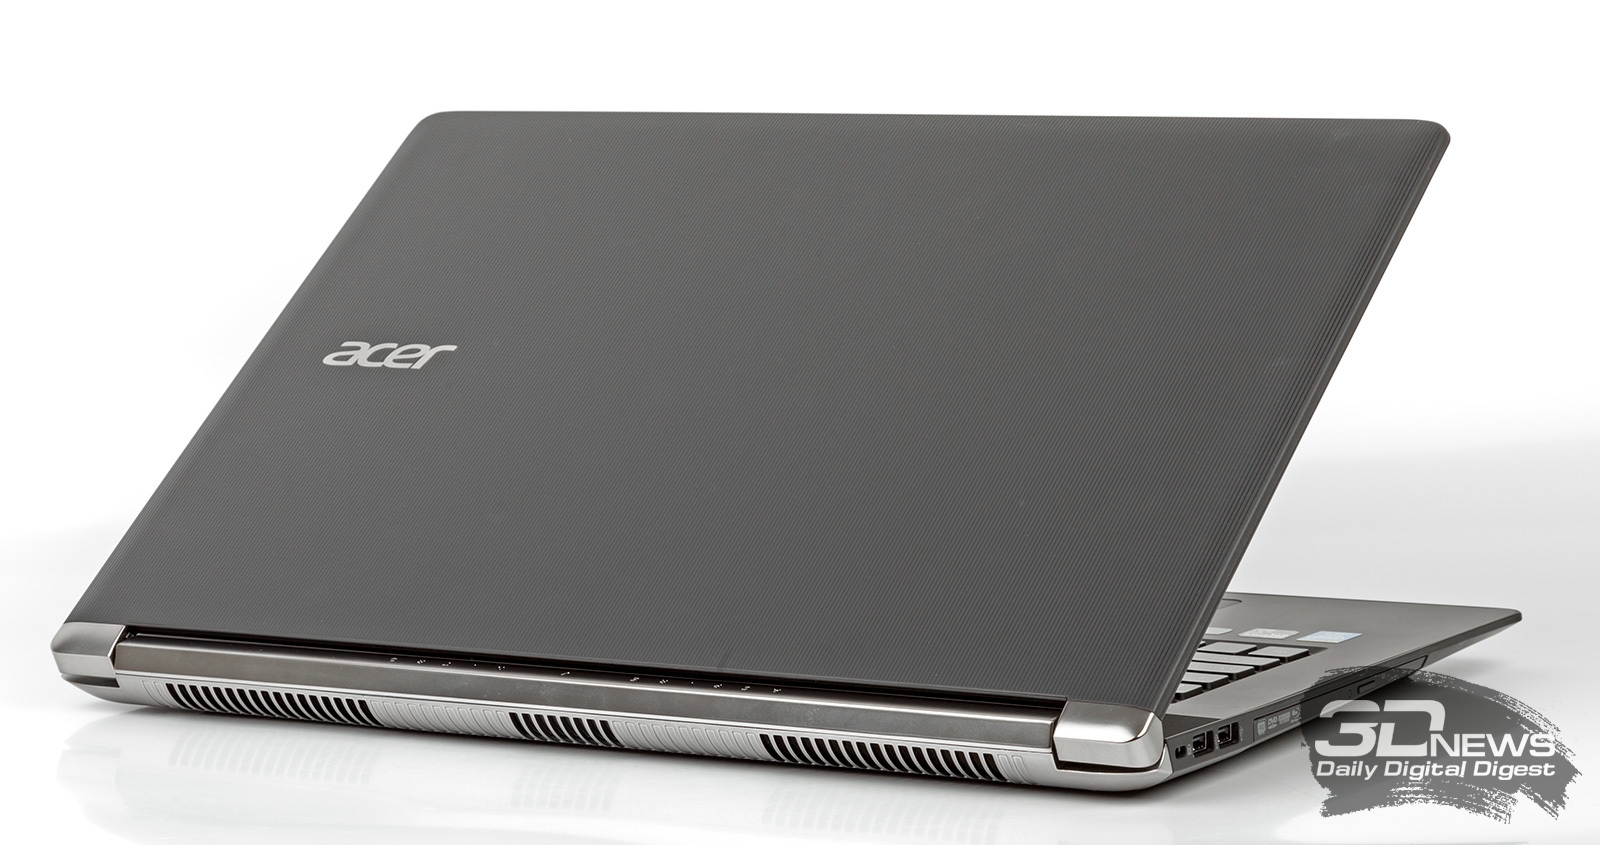 Игровые Ноутбуки Acer Цена